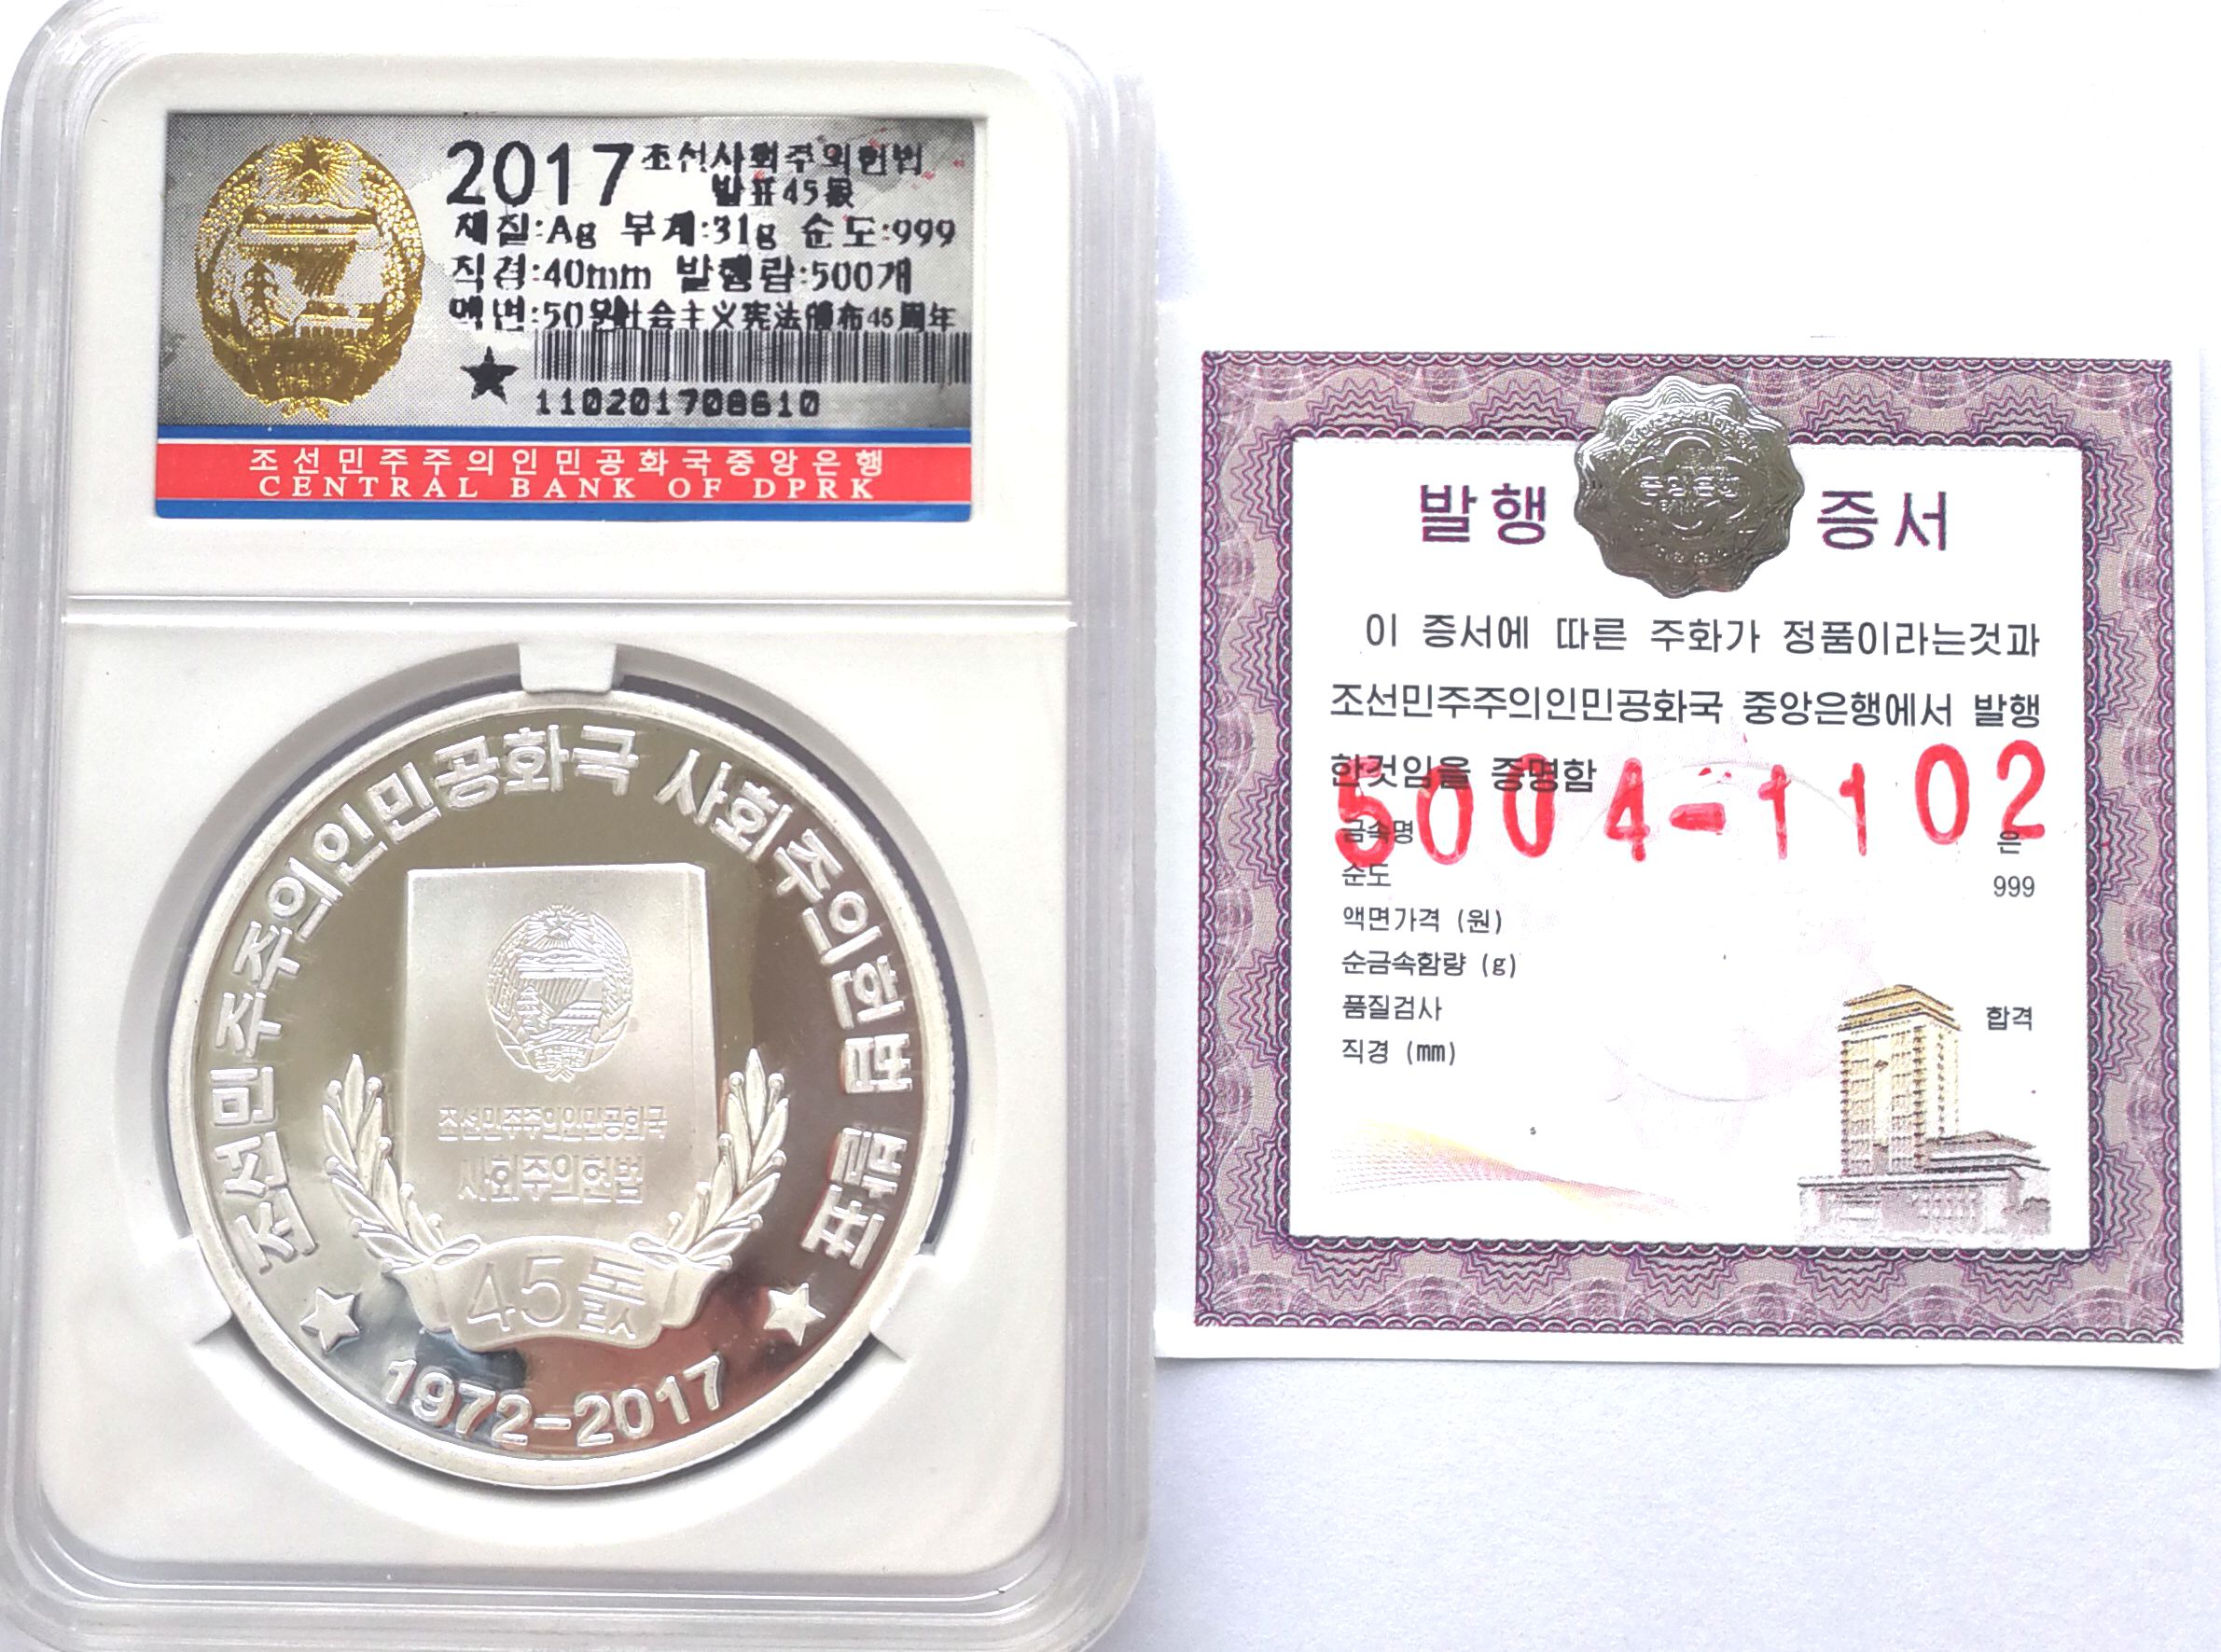 L3614, Korea Proof Silver Coin "45th Anni. Constitution", 2017, Korean Grade - Click Image to Close